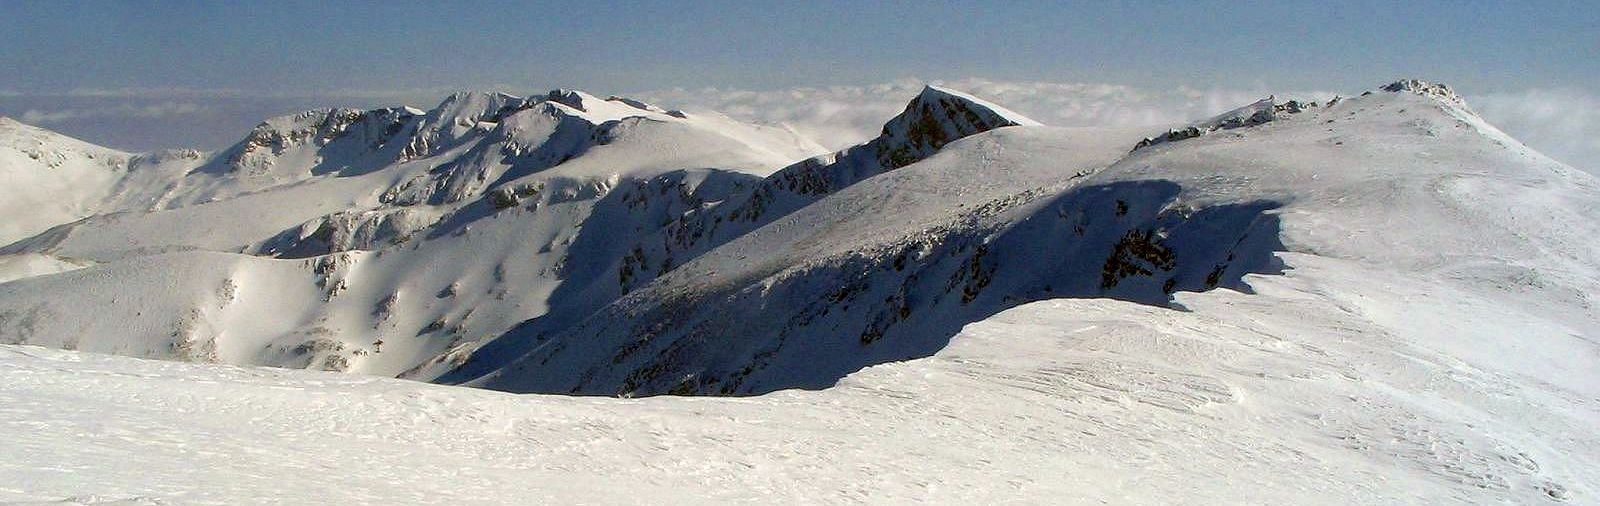 Summit plateau of Mt. Uludag